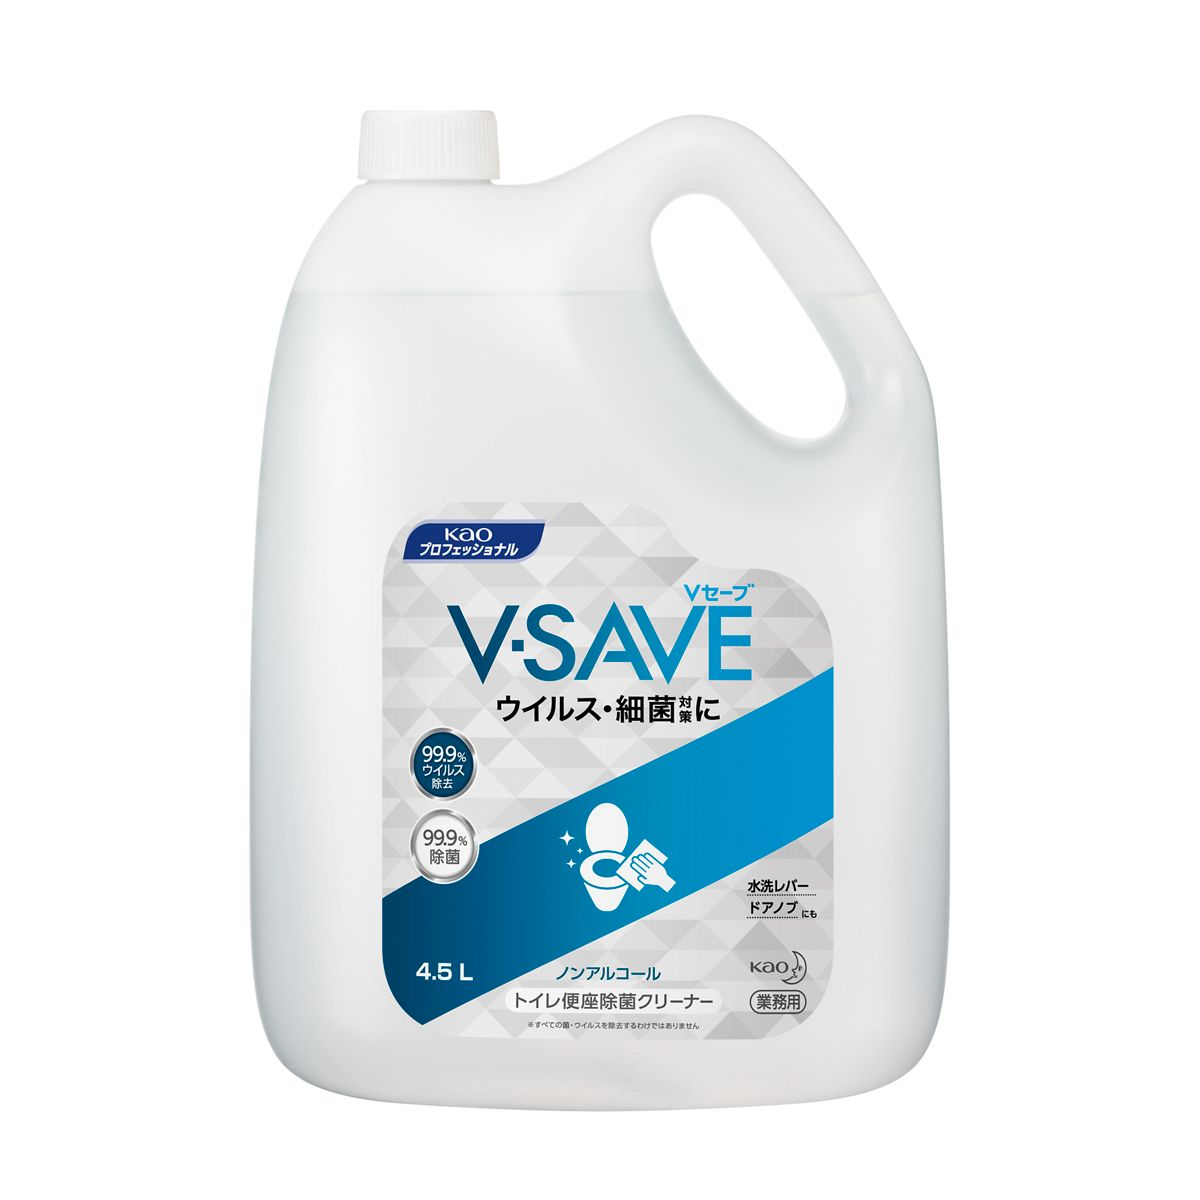 V-SAVE便座除菌クリーナー 業務用 4.5L